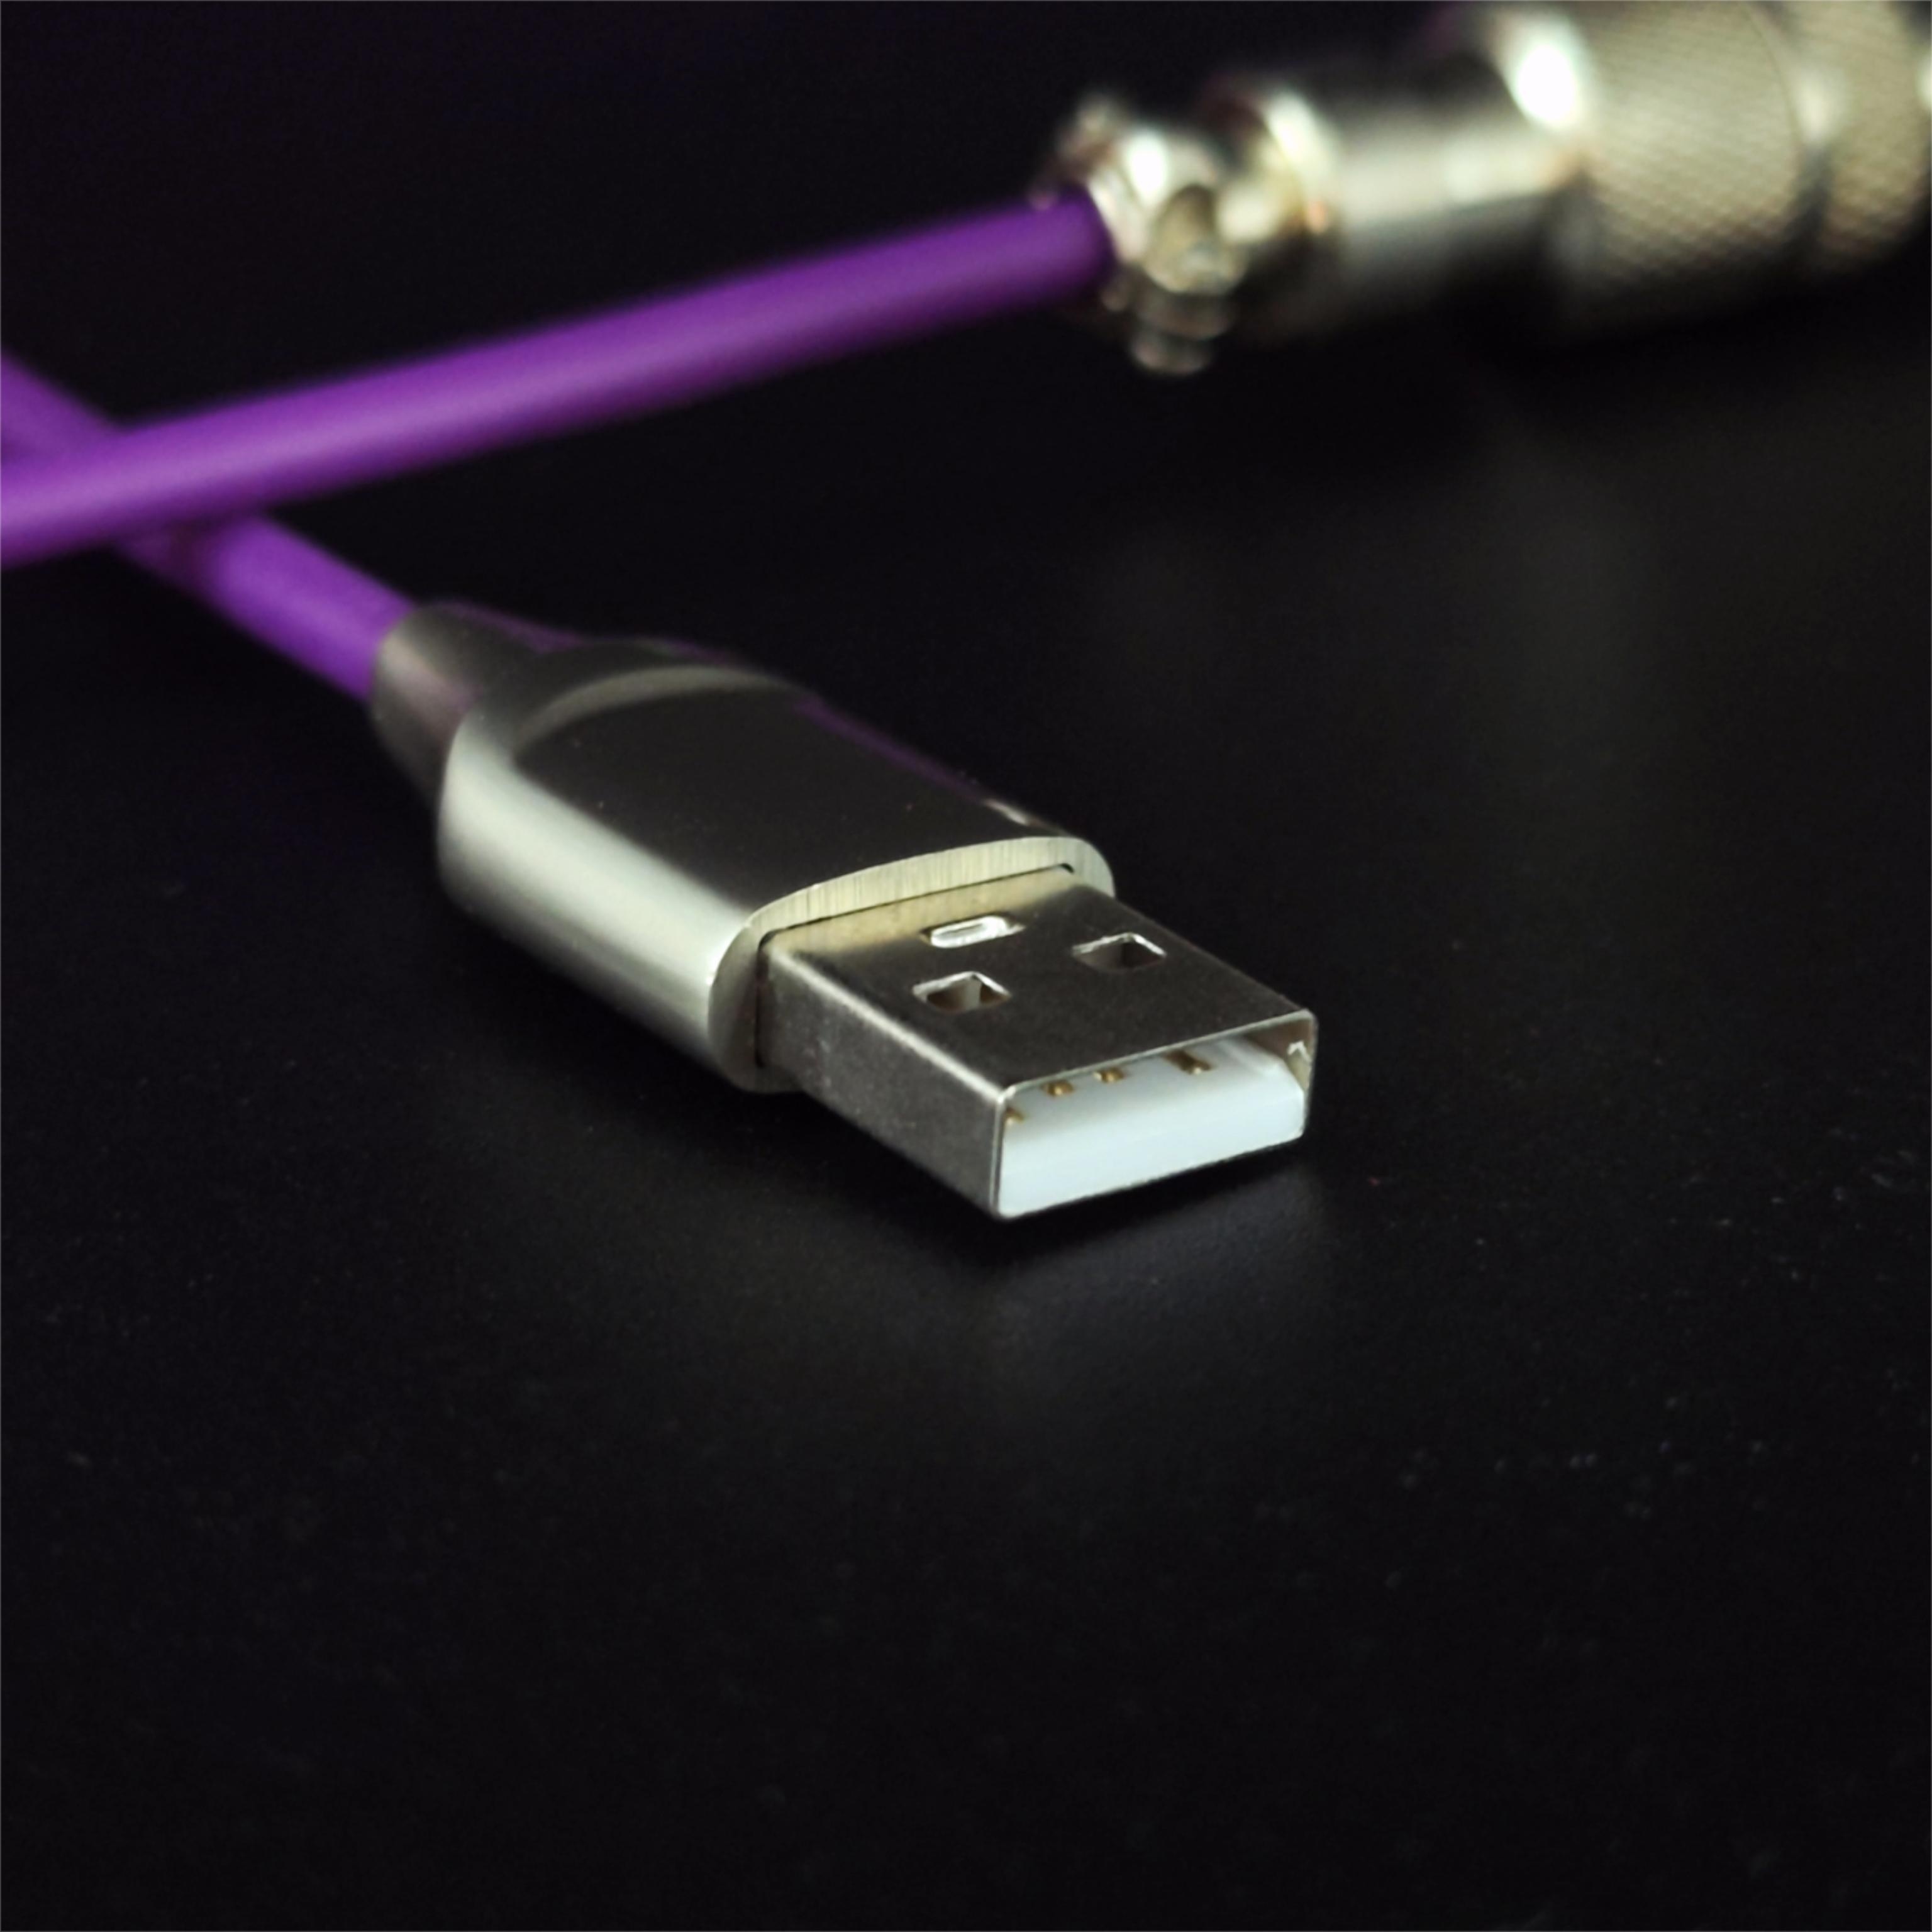 Câble métallique Cable enroulé, cable élastique USB-C, cable